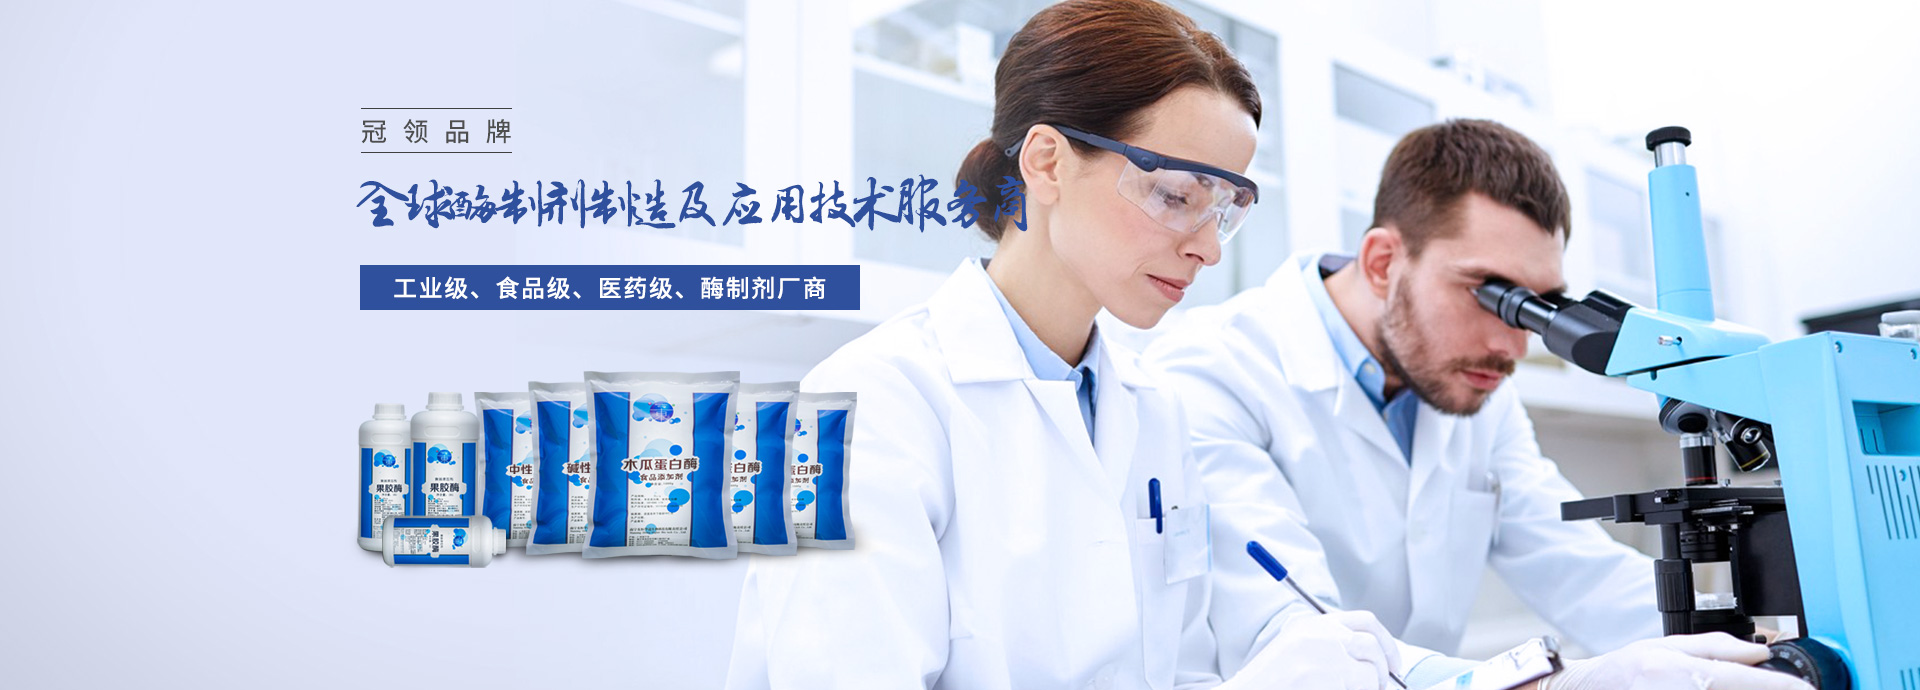 东恒华道-全球酶制剂生产及应用技术冠领品牌